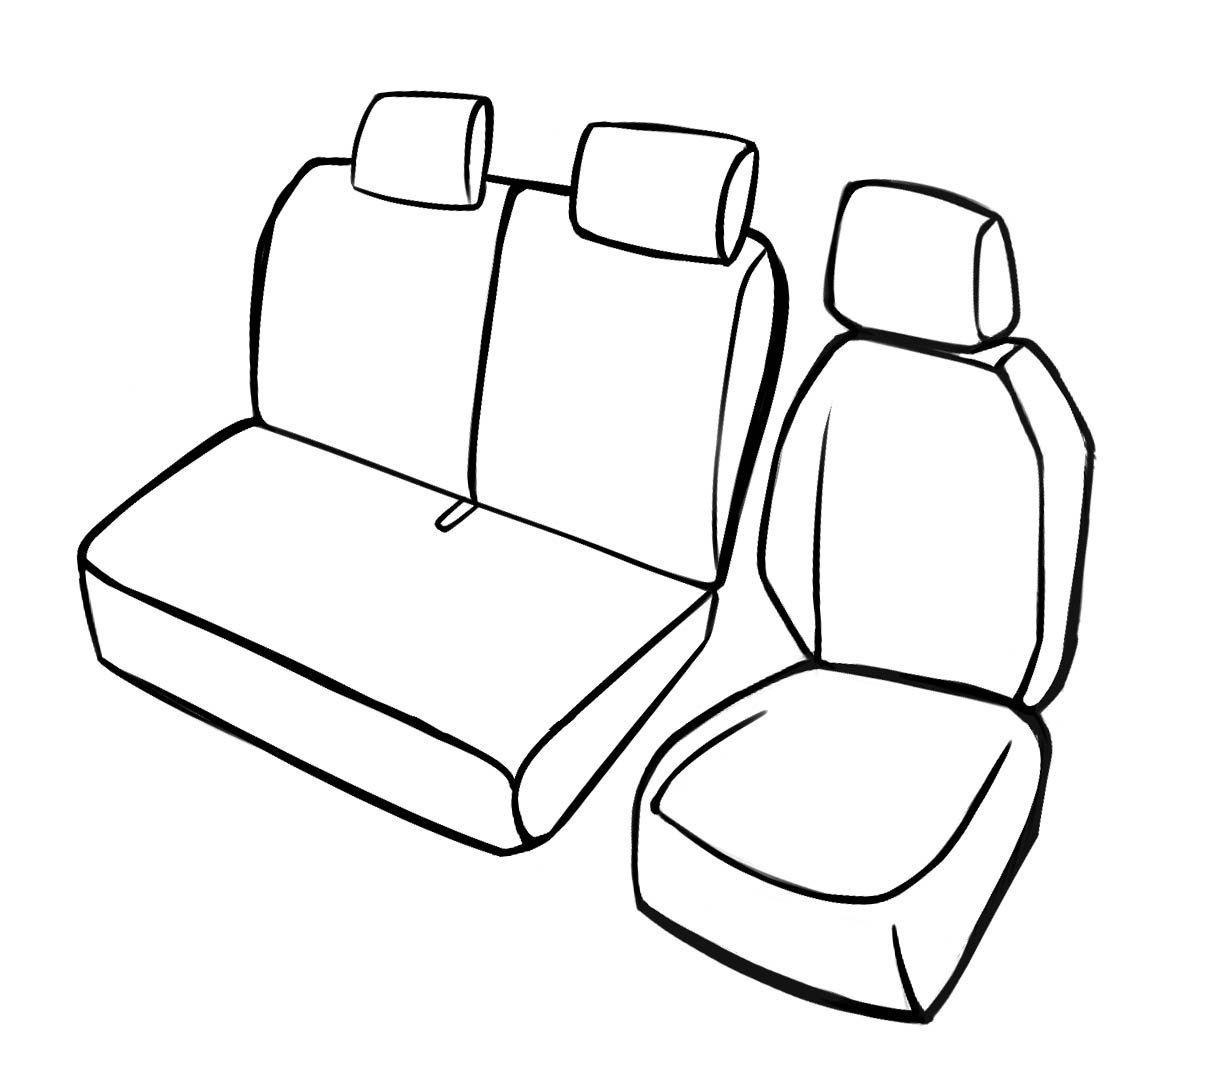 Premium Housse de siège pour Fiat Doblo 02/2010- auj., 1 housse de siège simple avant, 1 couverture de banc double